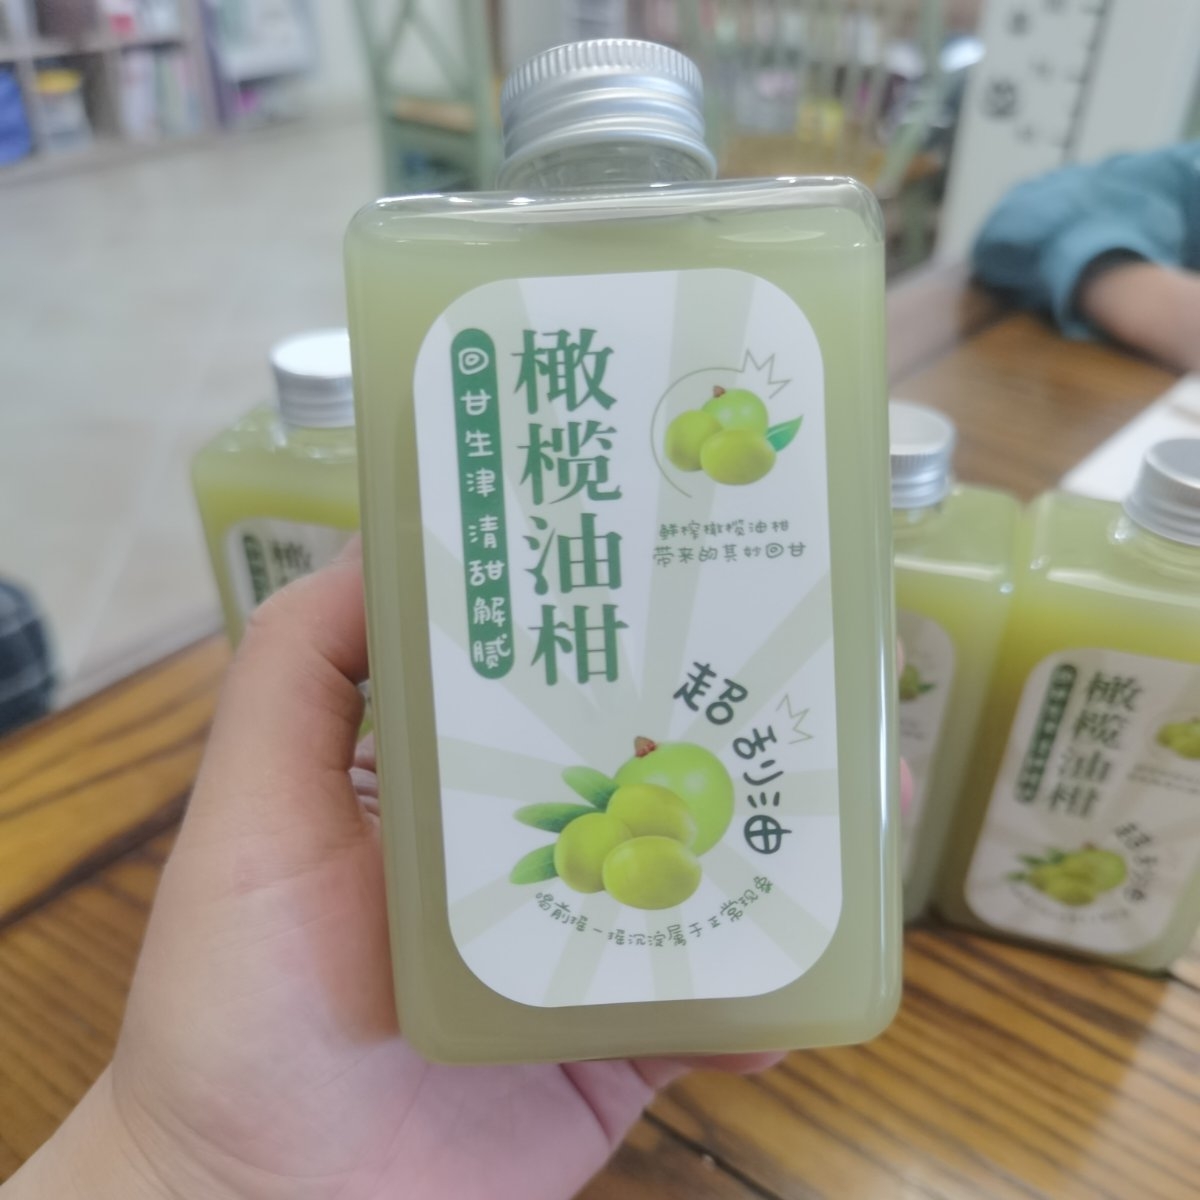 超详细教程→油柑橄榄汁